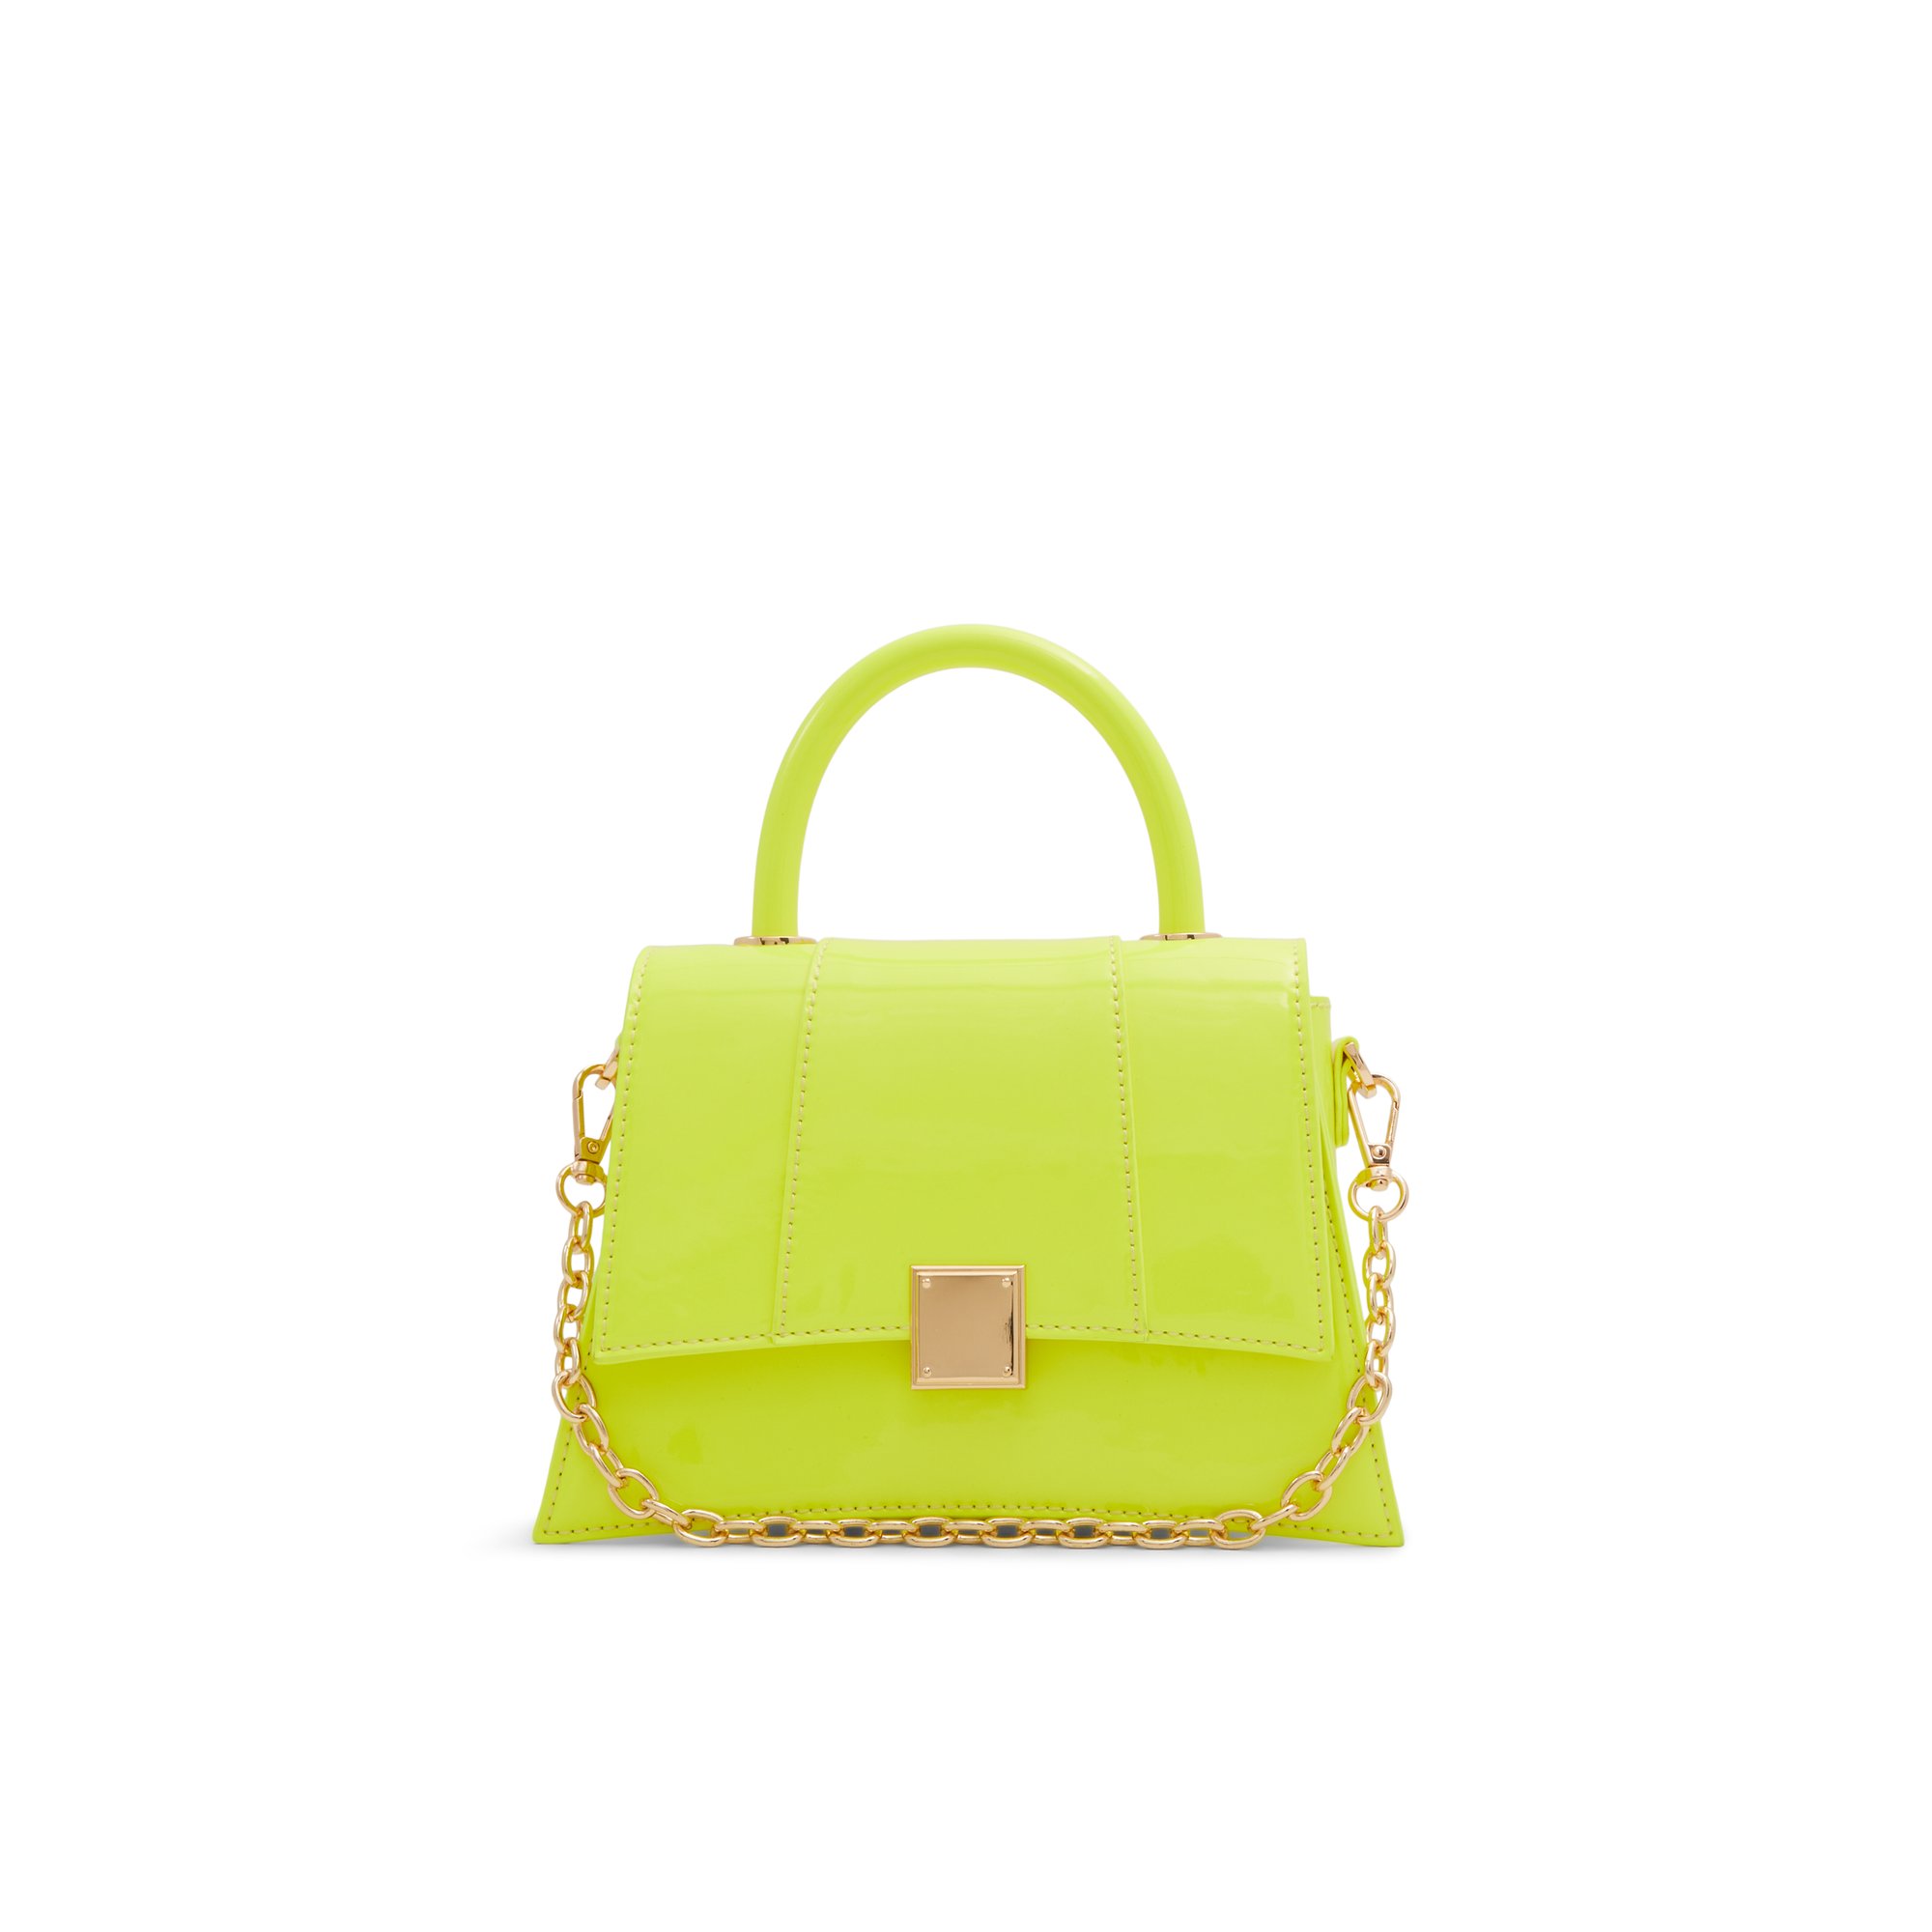 ALDO Kindraax - Women's Top Handle Handbag - Yellow